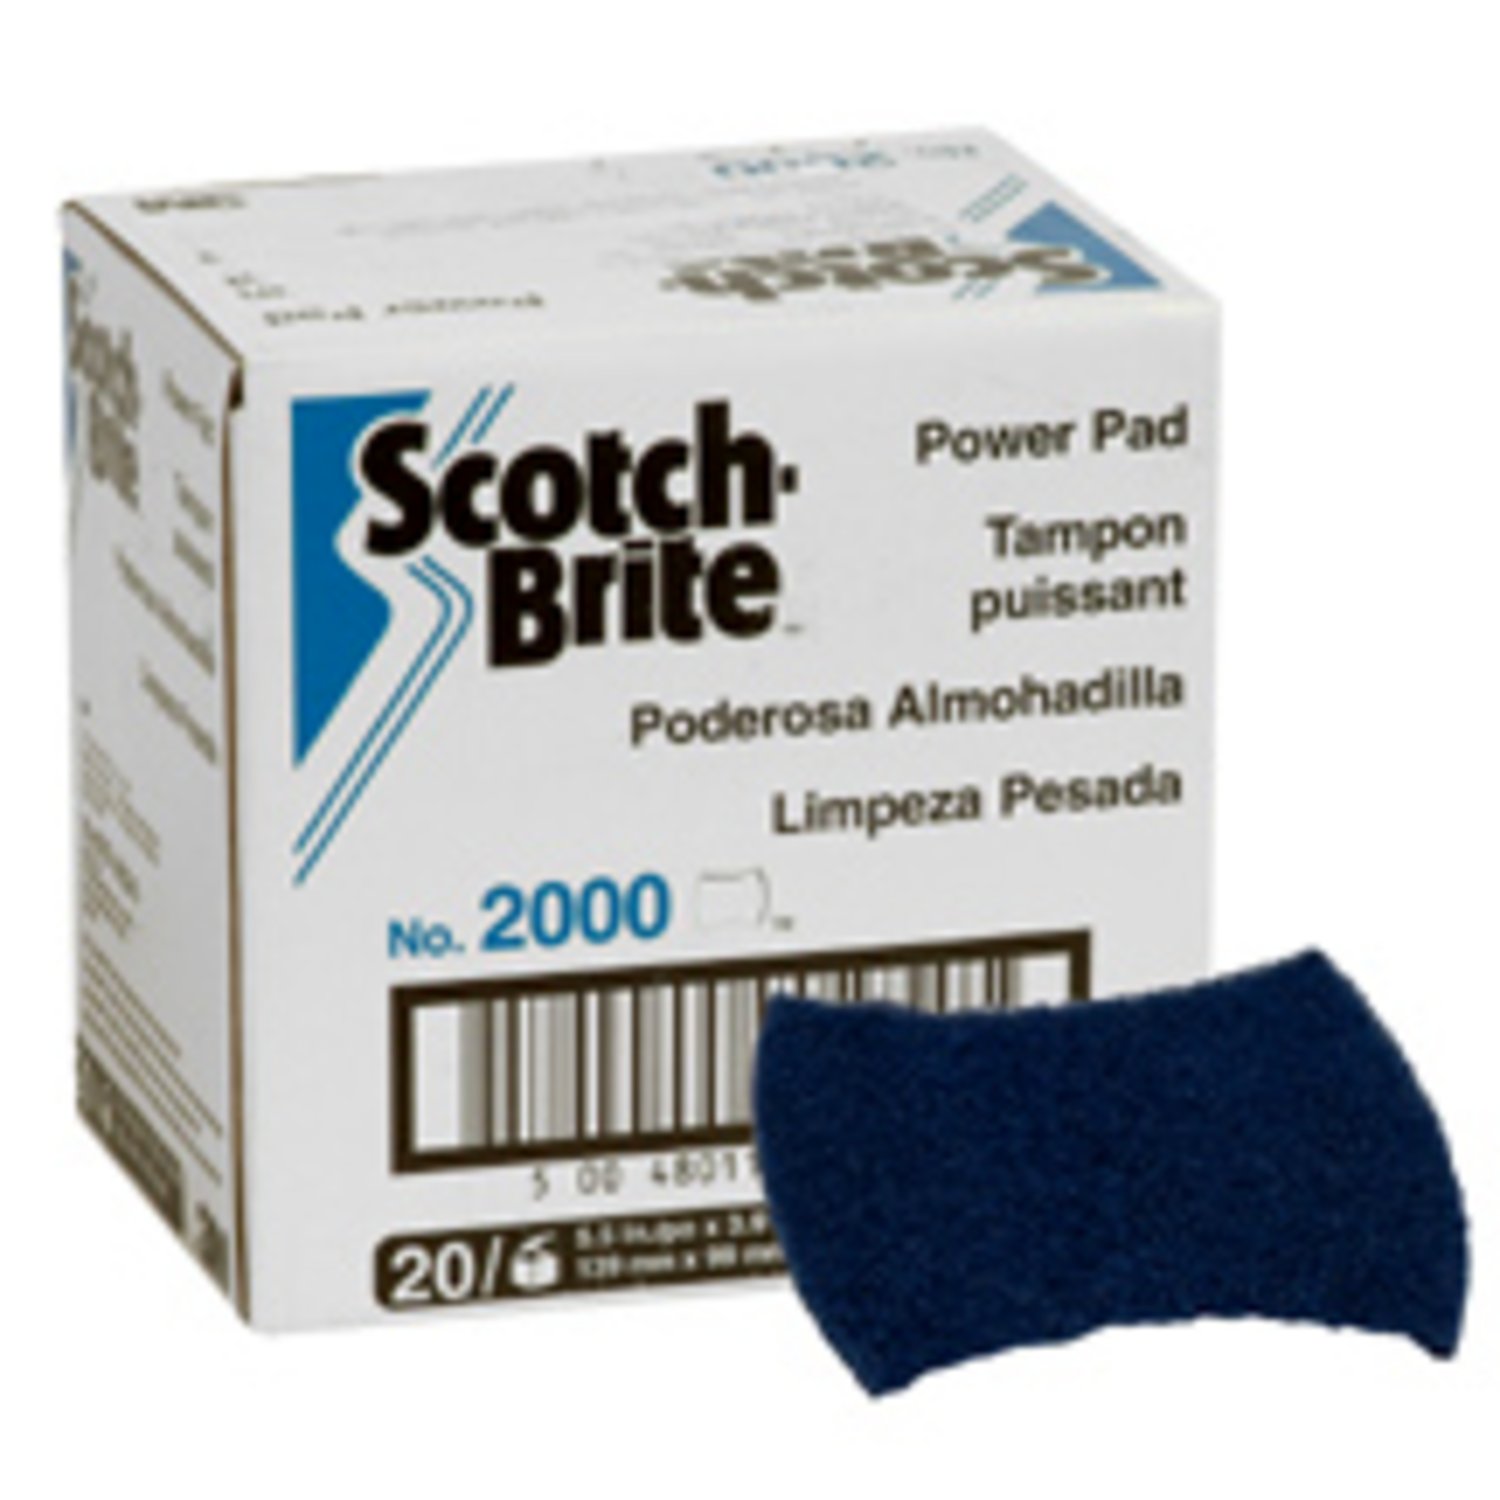 7010028962 - Scotch-Brite Powerpad 2000CC, 5.5 in x 3.9 in, 5/Pack, 6 Pack/Case